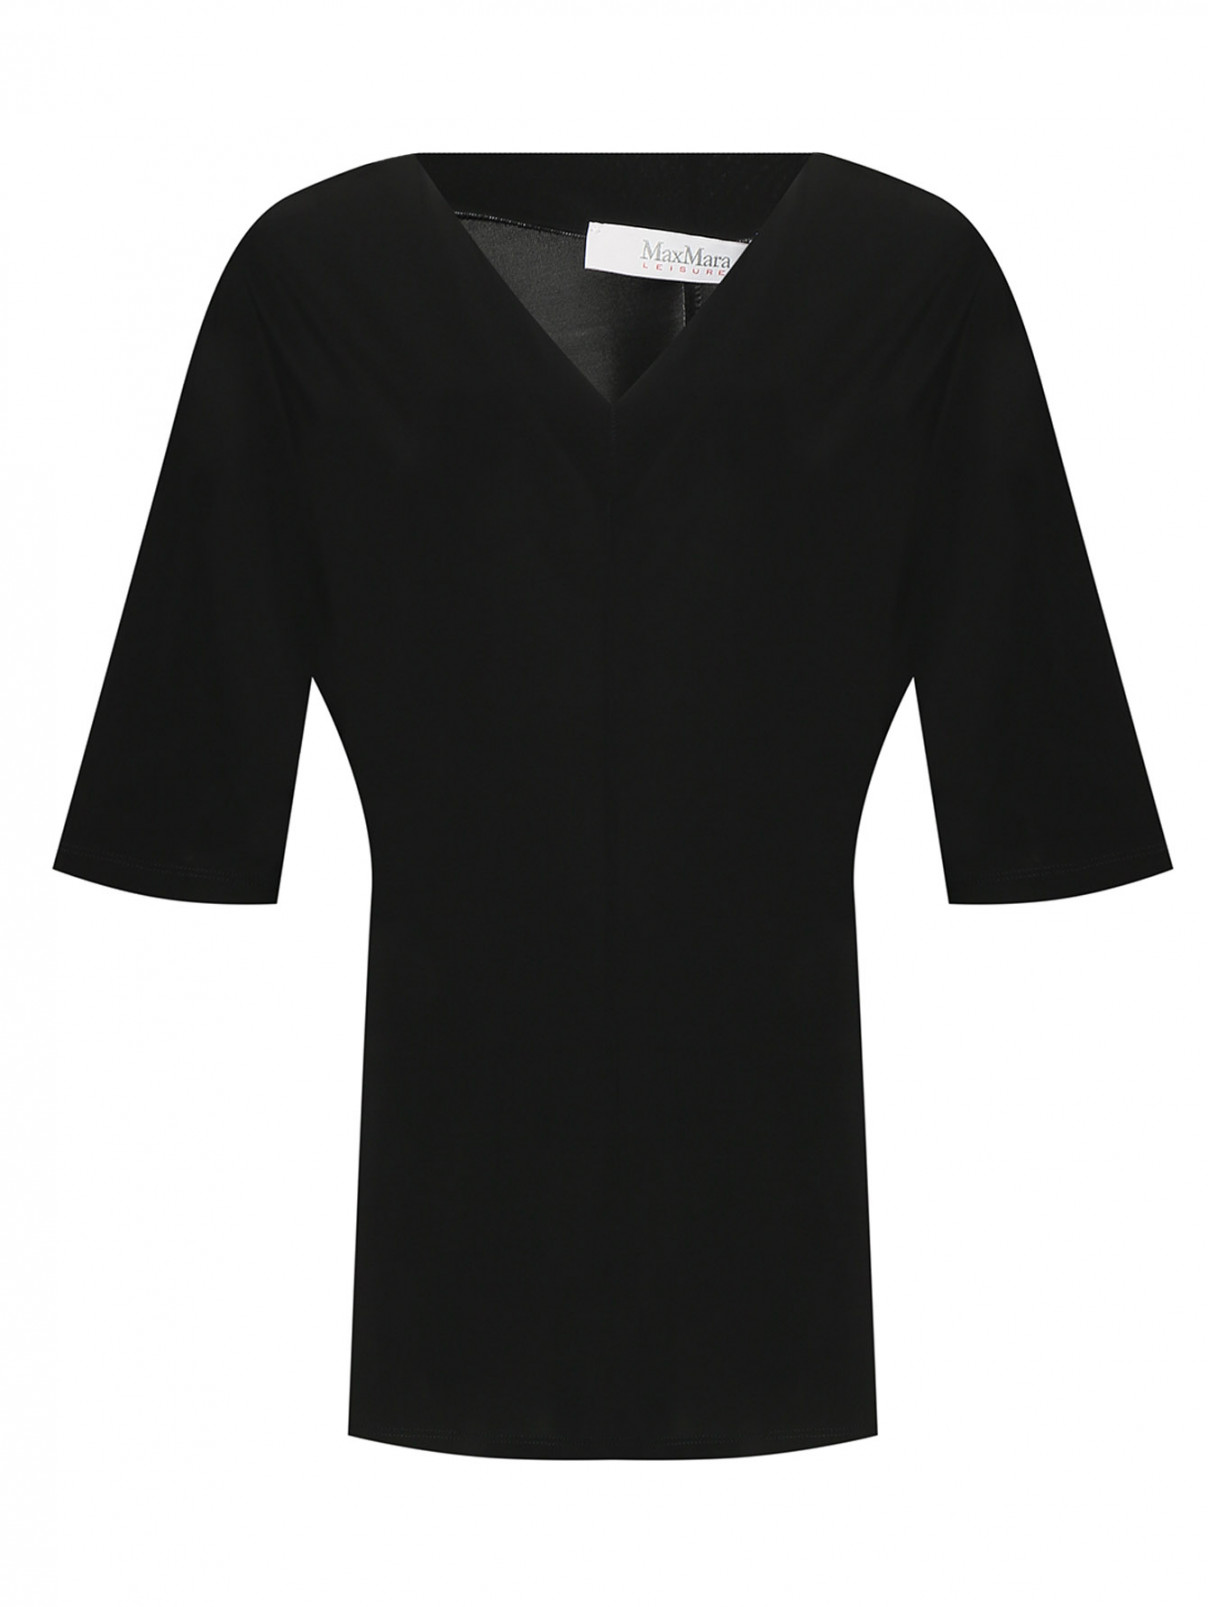 Блуза с V-образным вырезом Max Mara  –  Общий вид  – Цвет:  Черный